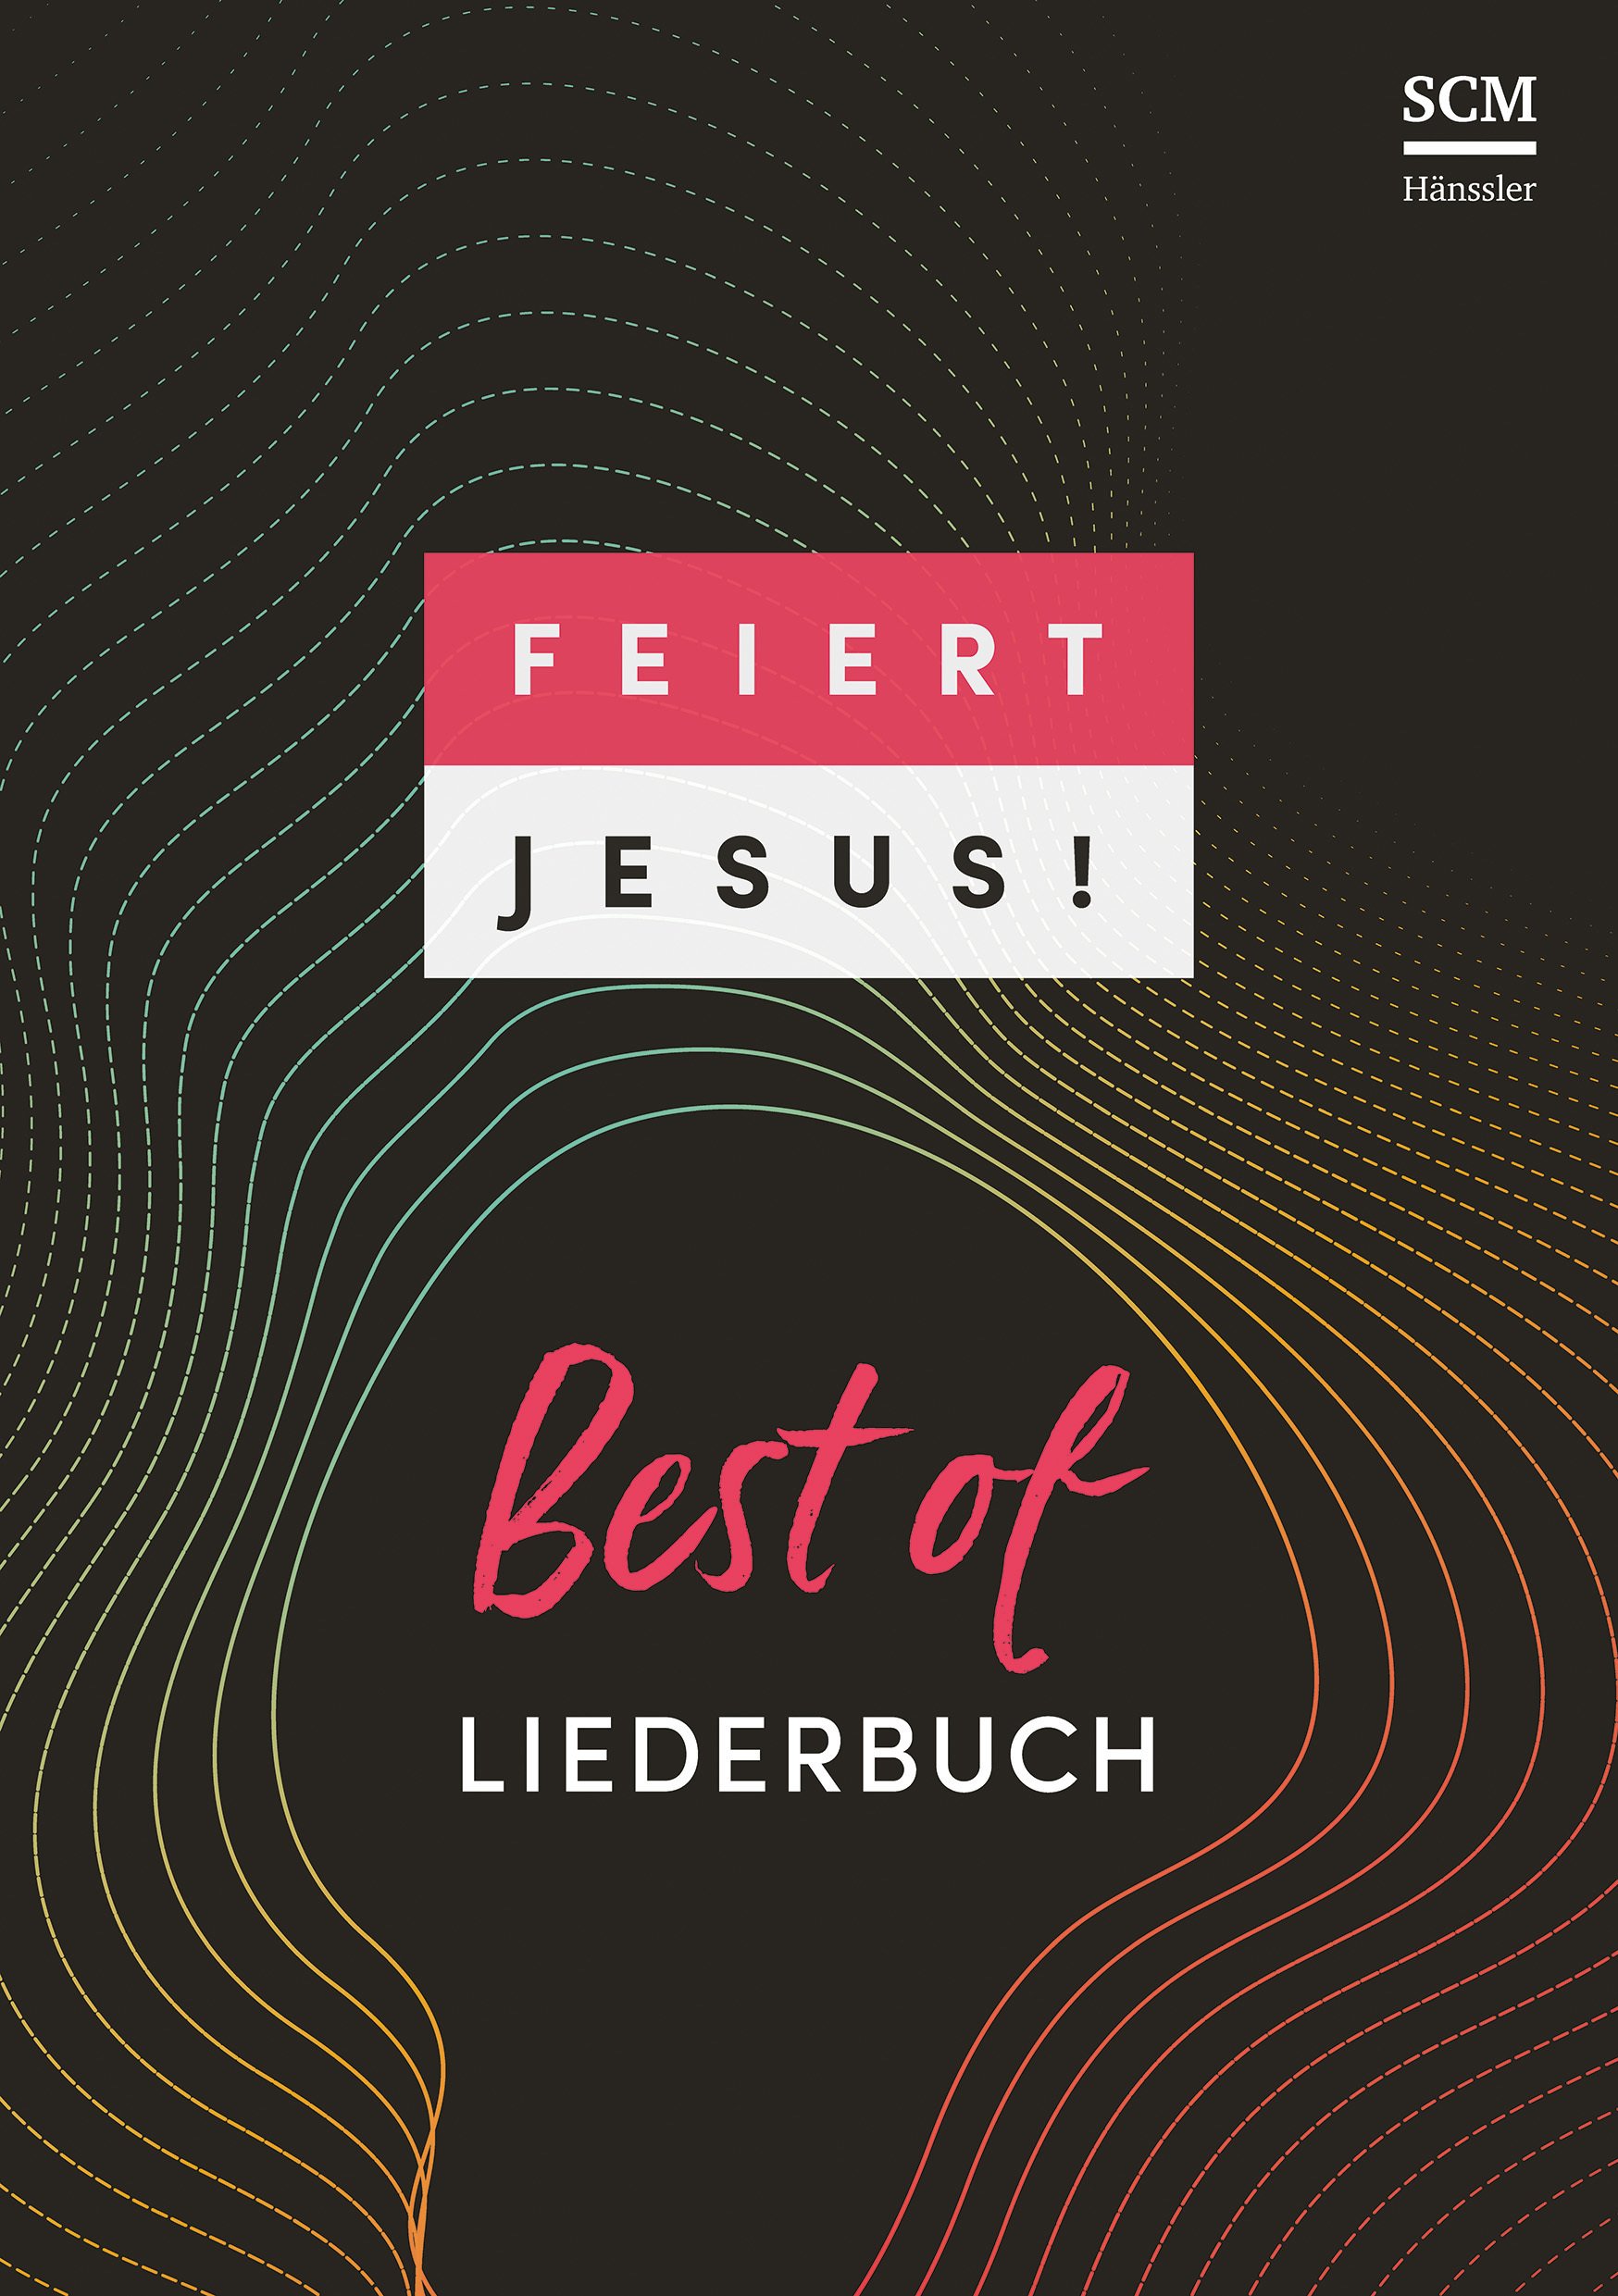 Feiert Jesus! 3 Best of (Liederbuch A4 Ringbuch) - Grossdruck